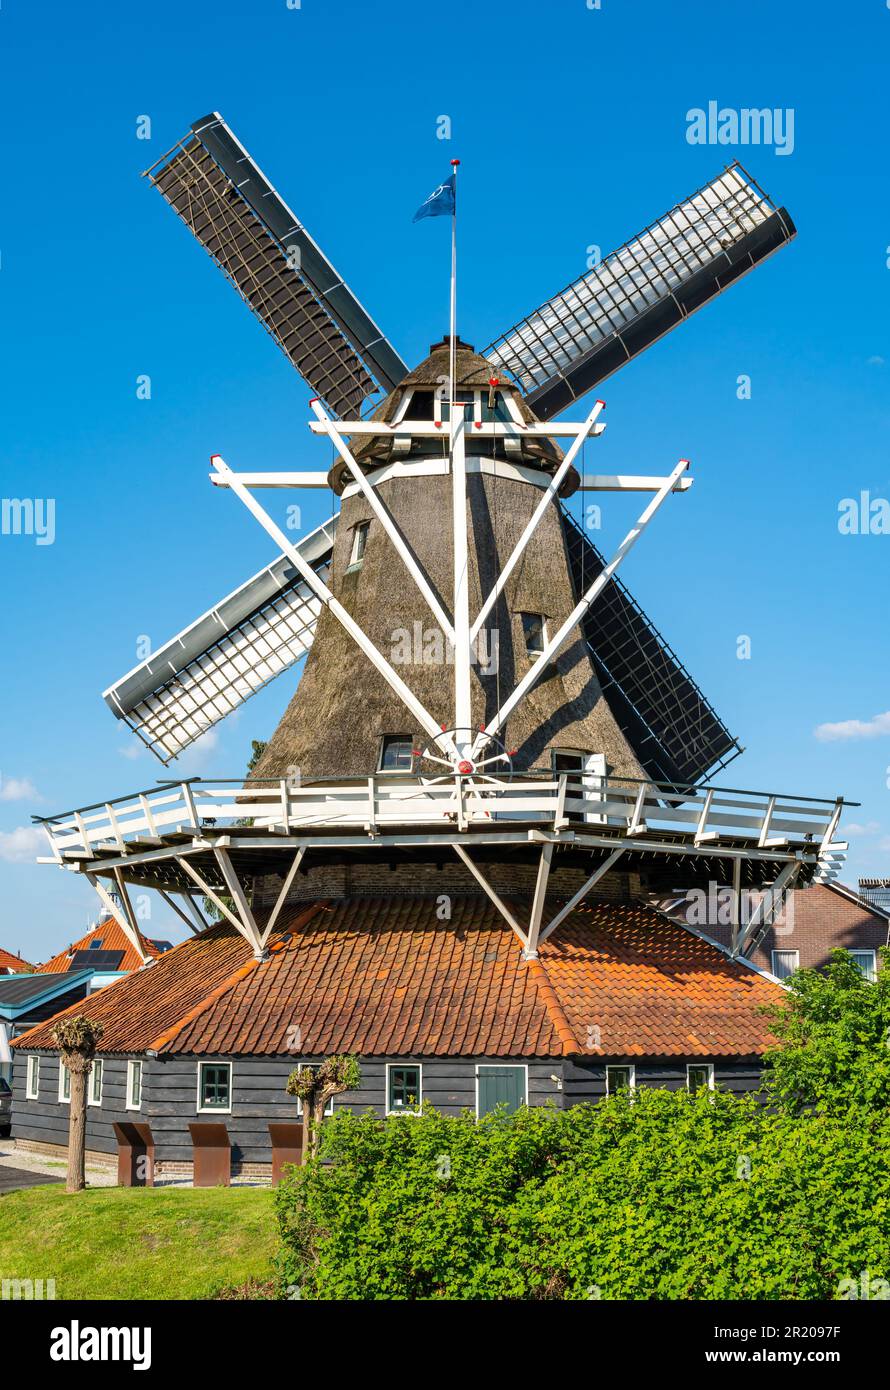 Moulin historique hollandais dans la ville de Meppel, province de Drenthe, le jour ensoleillé du printemps Banque D'Images